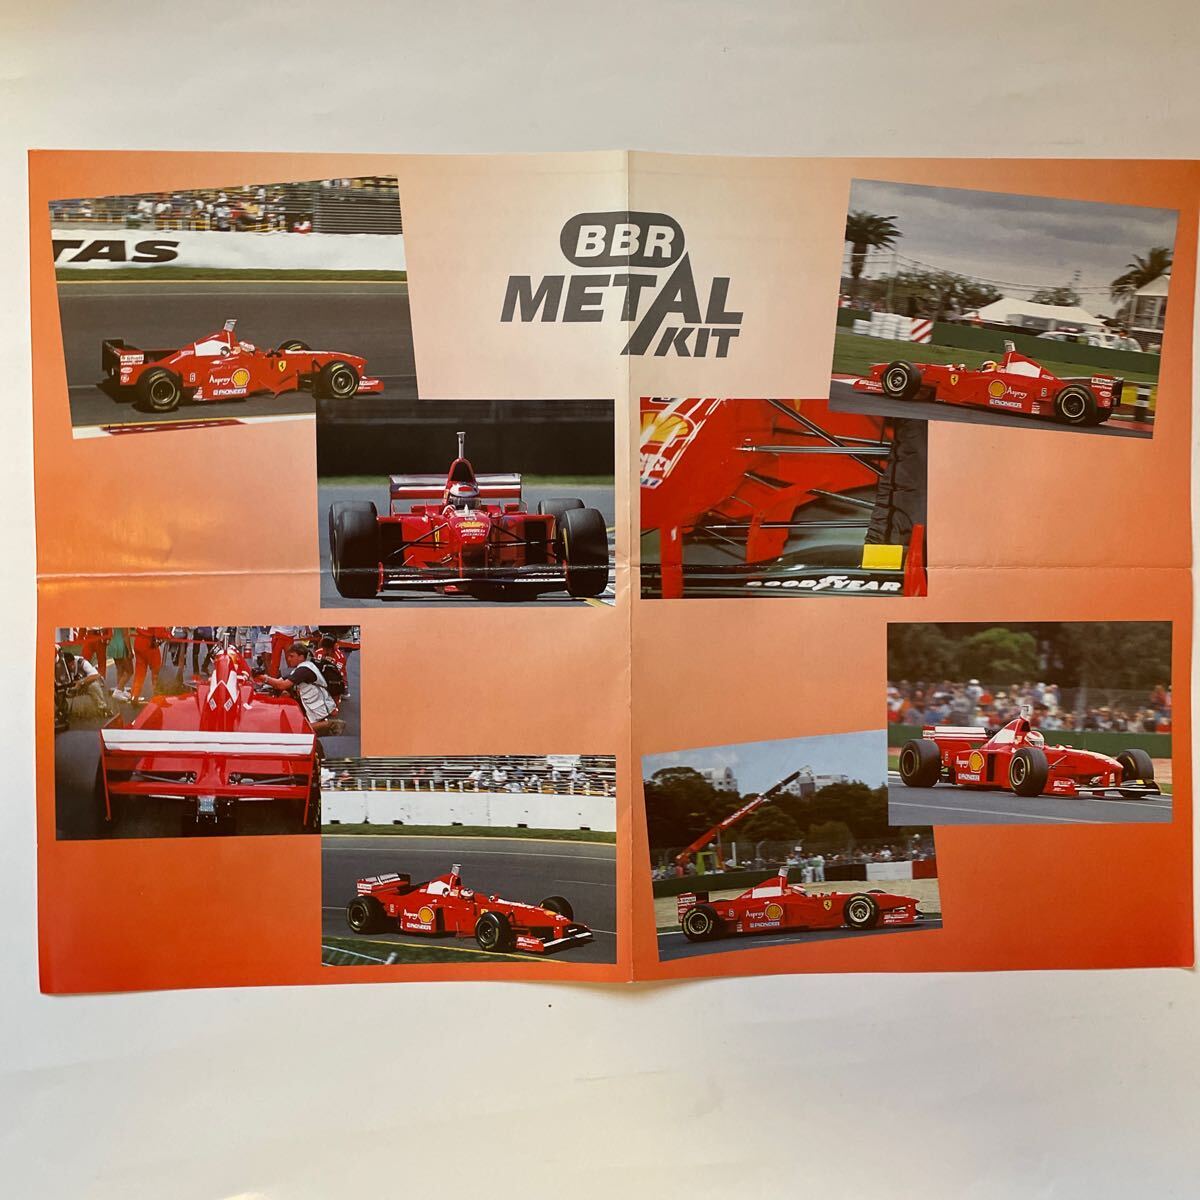 BBR 1/43 metal kit Ferrari F310B F1 free shipping 